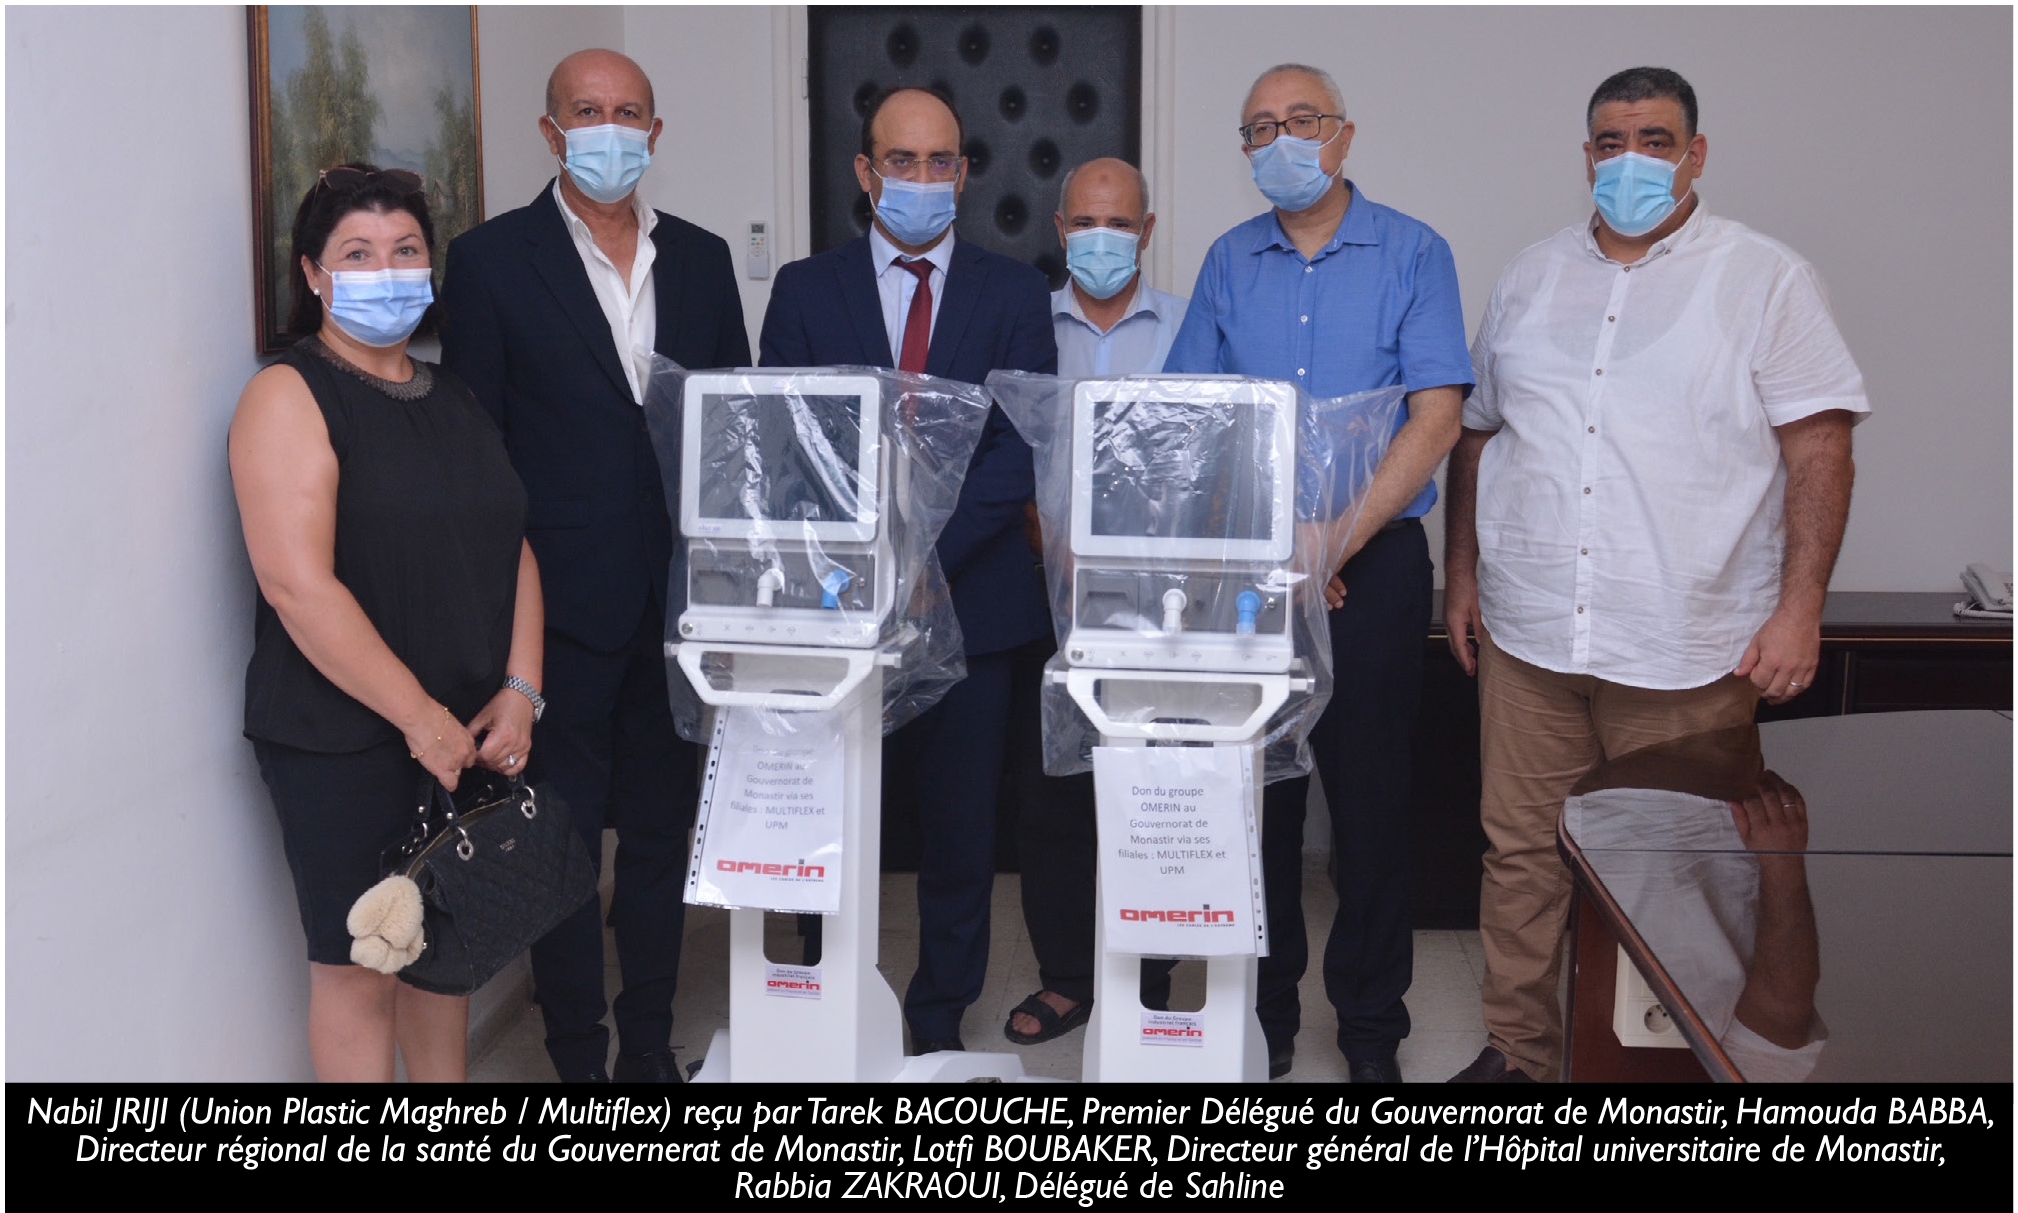 Le Groupe OMERIN offre 4 respirateurs de ranimation aux hpitaux de Bizerte et Monastir 